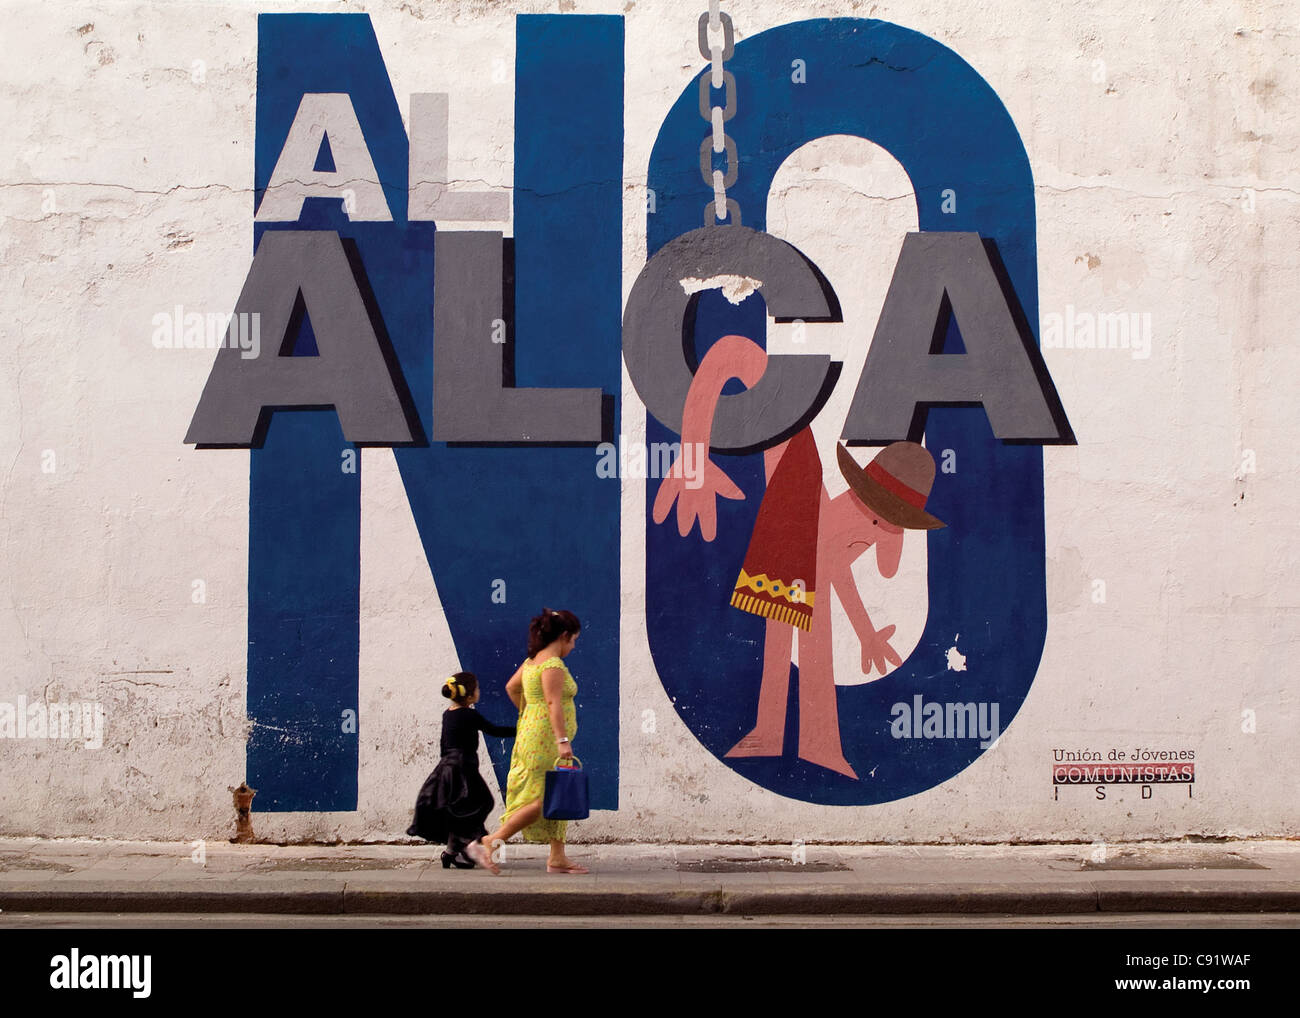 Pintadas contra el ALCA, el ALCA (Área de Libre Comercio de las Américas).  Centro Habana, Habana, Cuba Fotografía de stock - Alamy